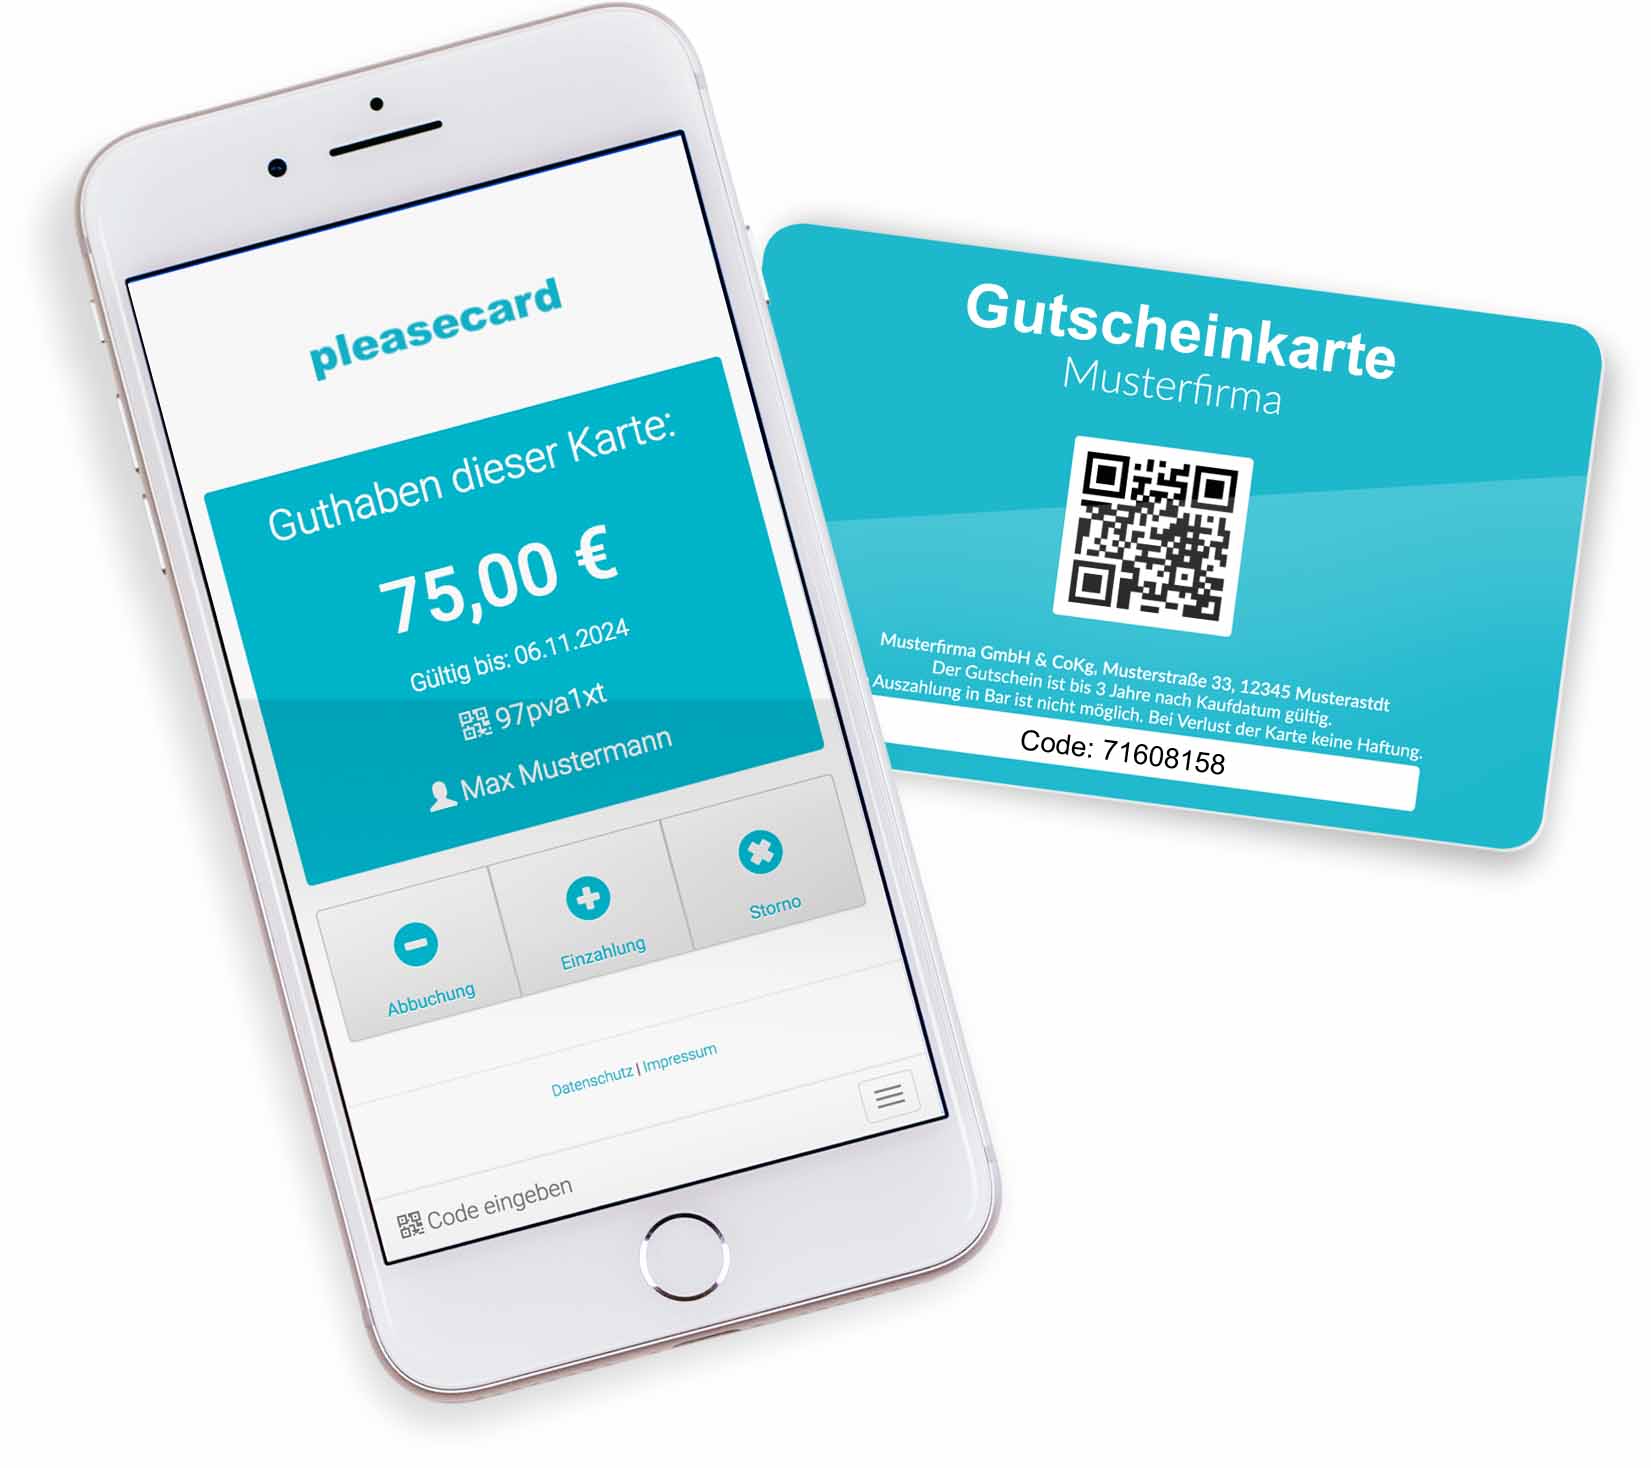 Anbieter für Gutscheinkarten im Scheckkartenformat (Kreditkartenformat) mit Gutscheinkarten-System für die Gastronomie